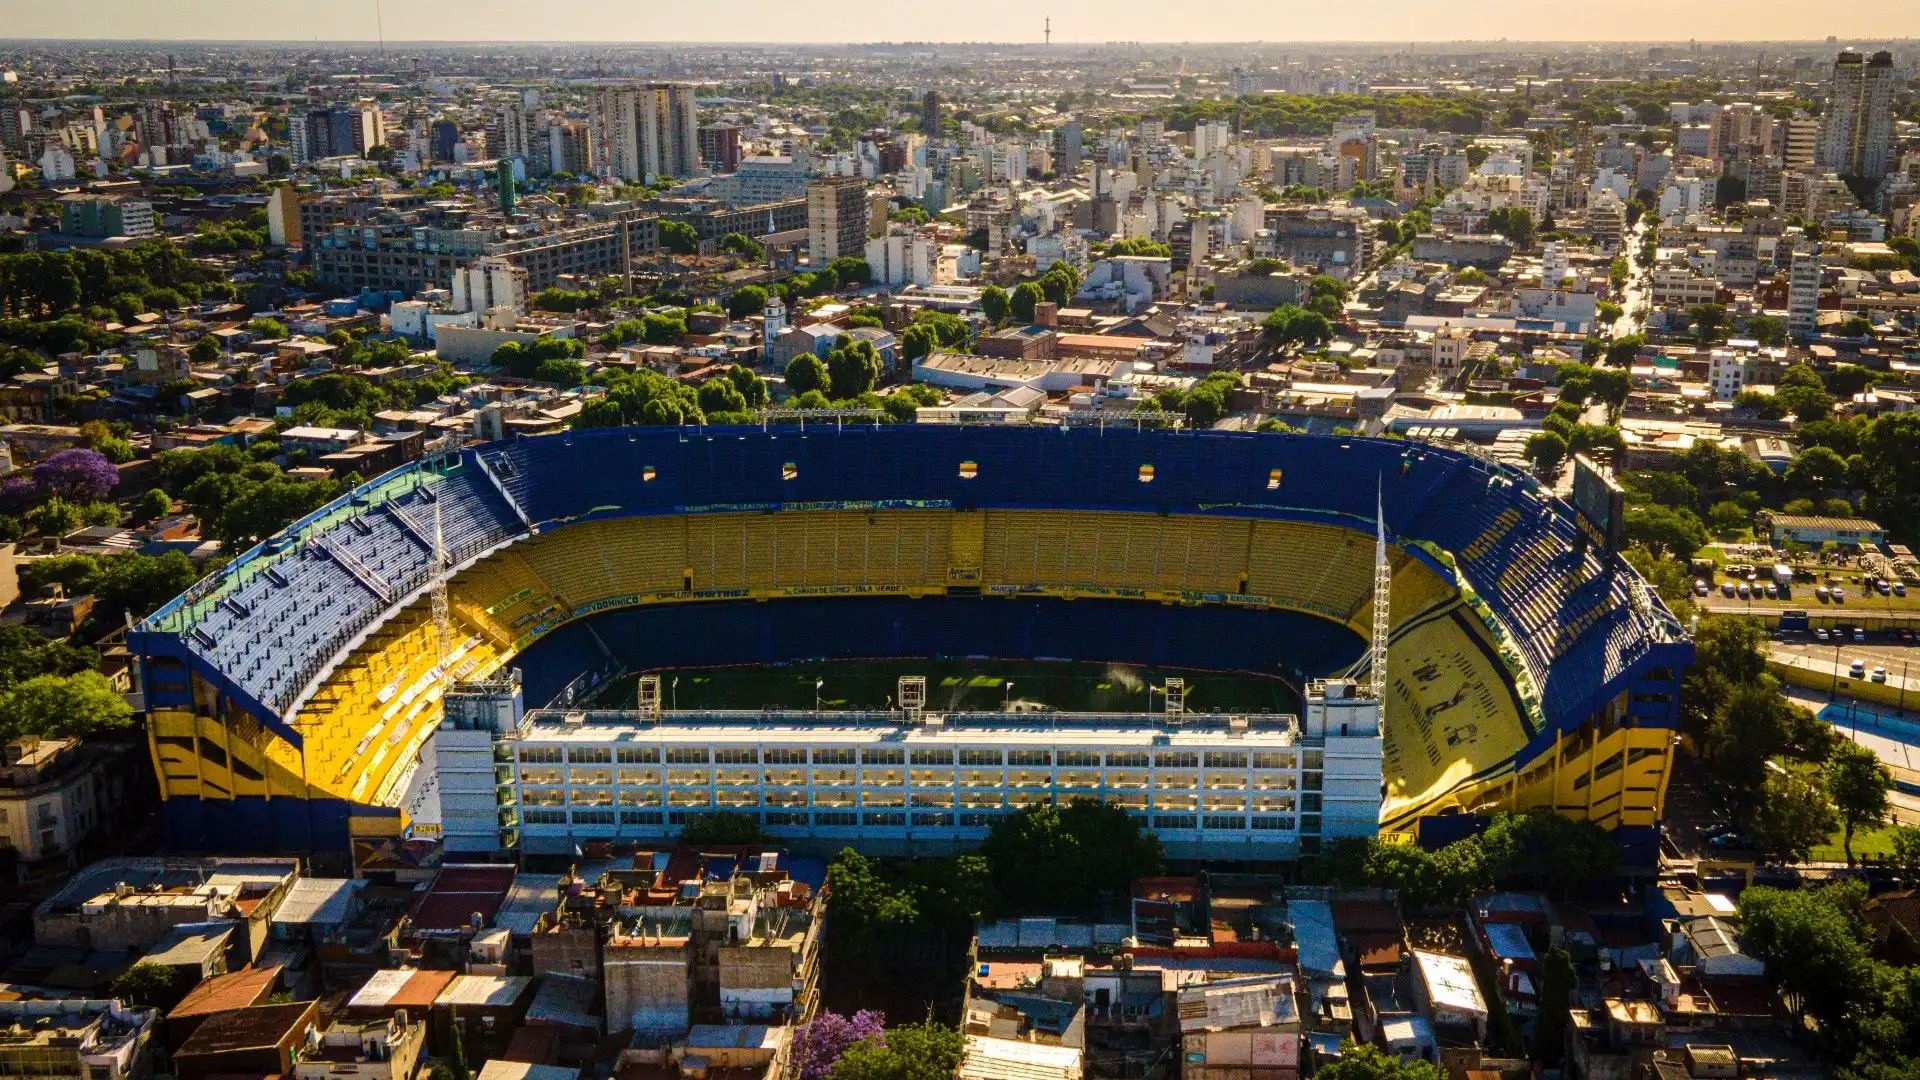 La Bombonera - Buenos Aires, Argentina: lo stadio del Boca Juniors, famoso per la sua forma a "botte". Sicuramente tra gli stadi più belli del mondo